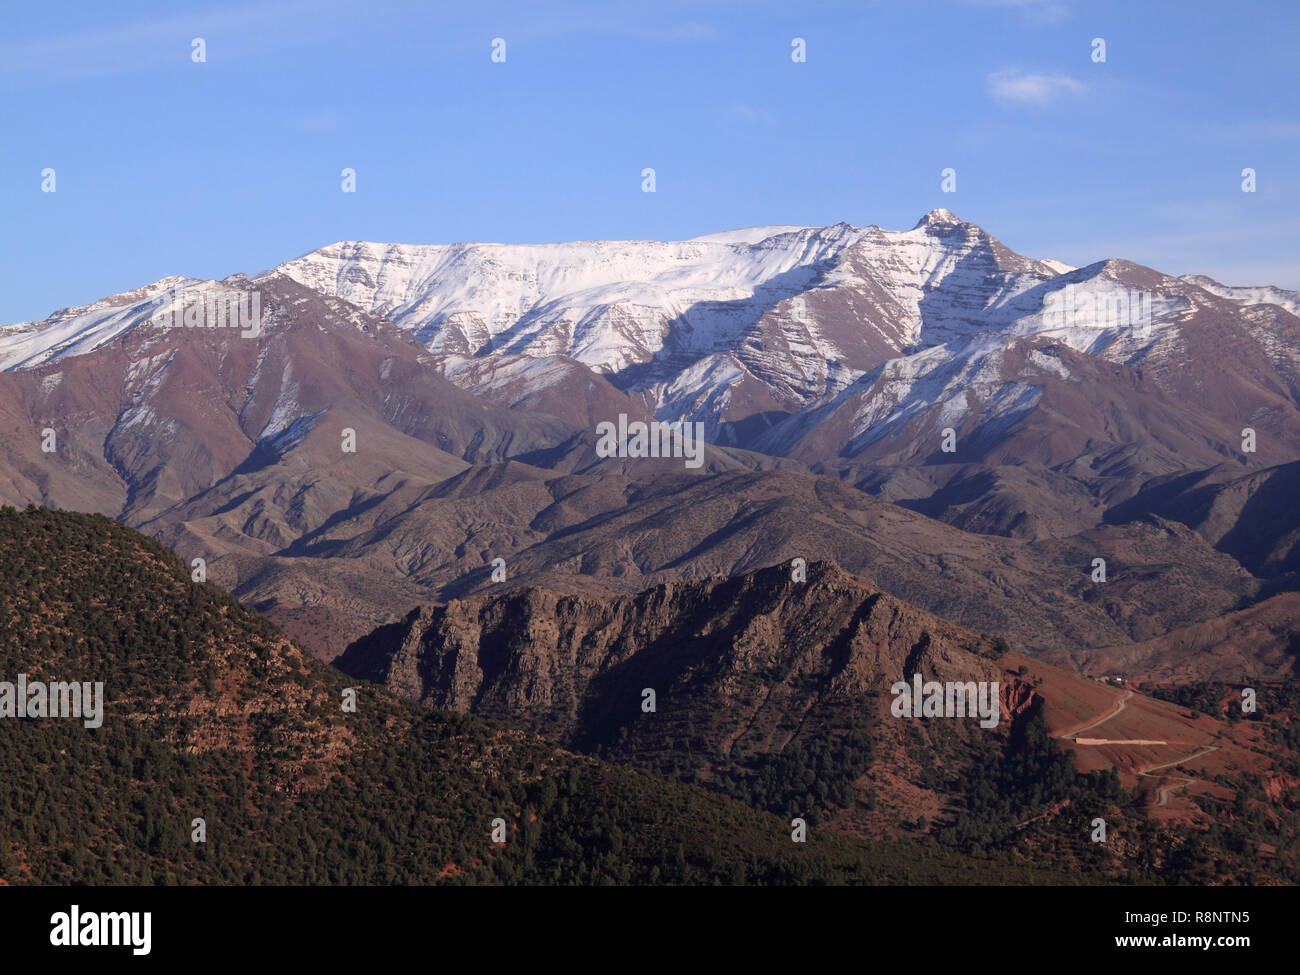 Morocco The snow-capped High Atlas Mountain range between Marrakesh, Ait Ben Haddou and Ouarzazate. Stock Photo